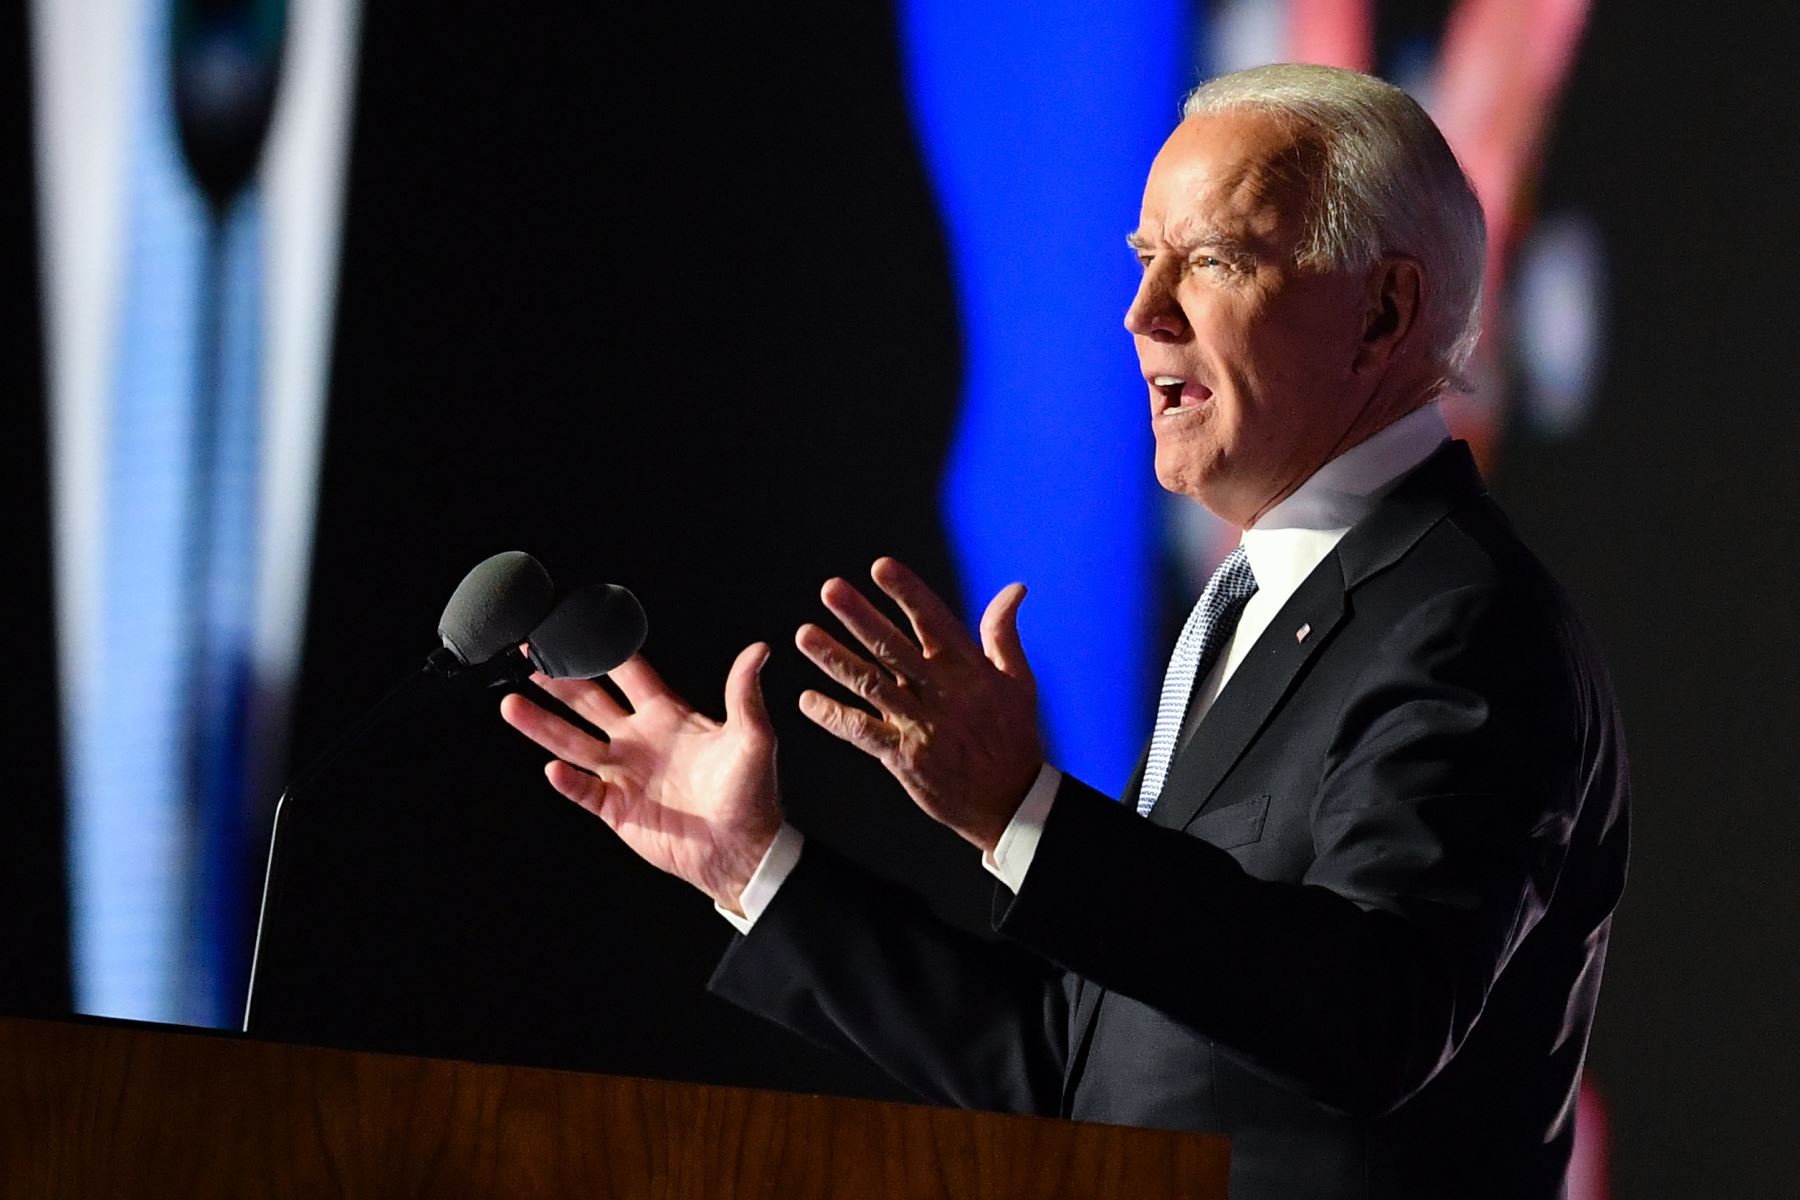 El presidente electo de los Estados Unidos; Joe Biden, pronuncia un discurso en Wilmington, Delaware, luego de ser declarado ganador de las elecciones presidenciales.
Foto: AFP